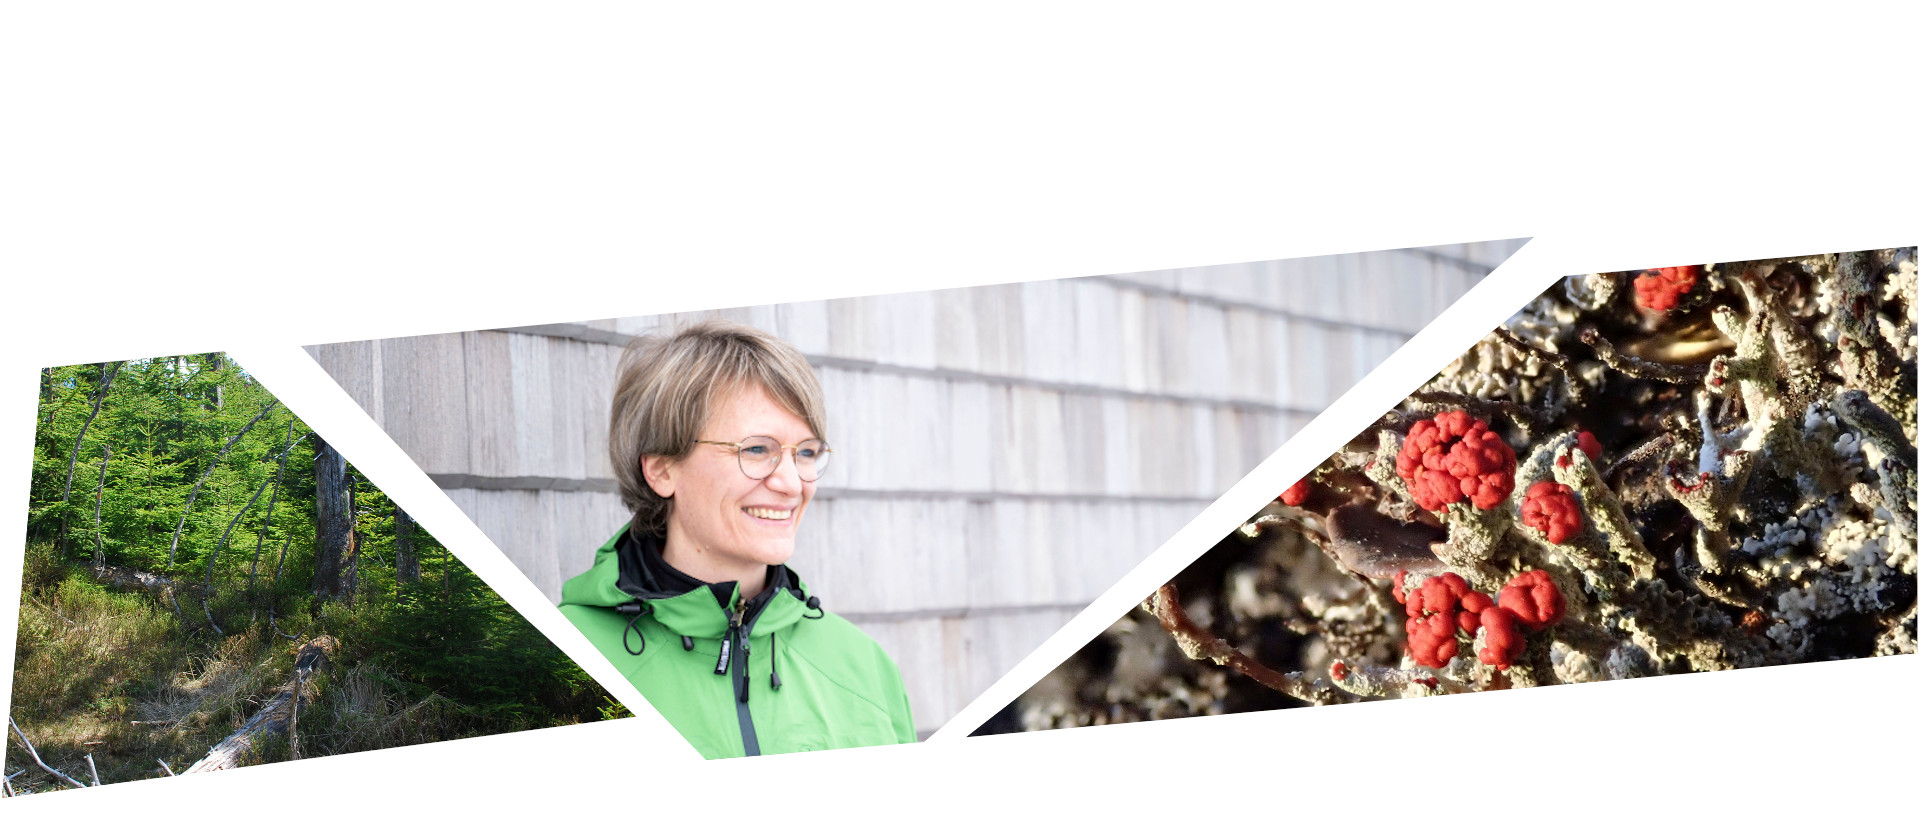 Collage aus drei Bildern: wilder Wald, eine Frau mit blonden Haaren und grüner Jacke und eine Felchte mit roten Köpfchen. Fotos: Charly Ebel/Daniel Müller (Nationalpark Schwarzwald)